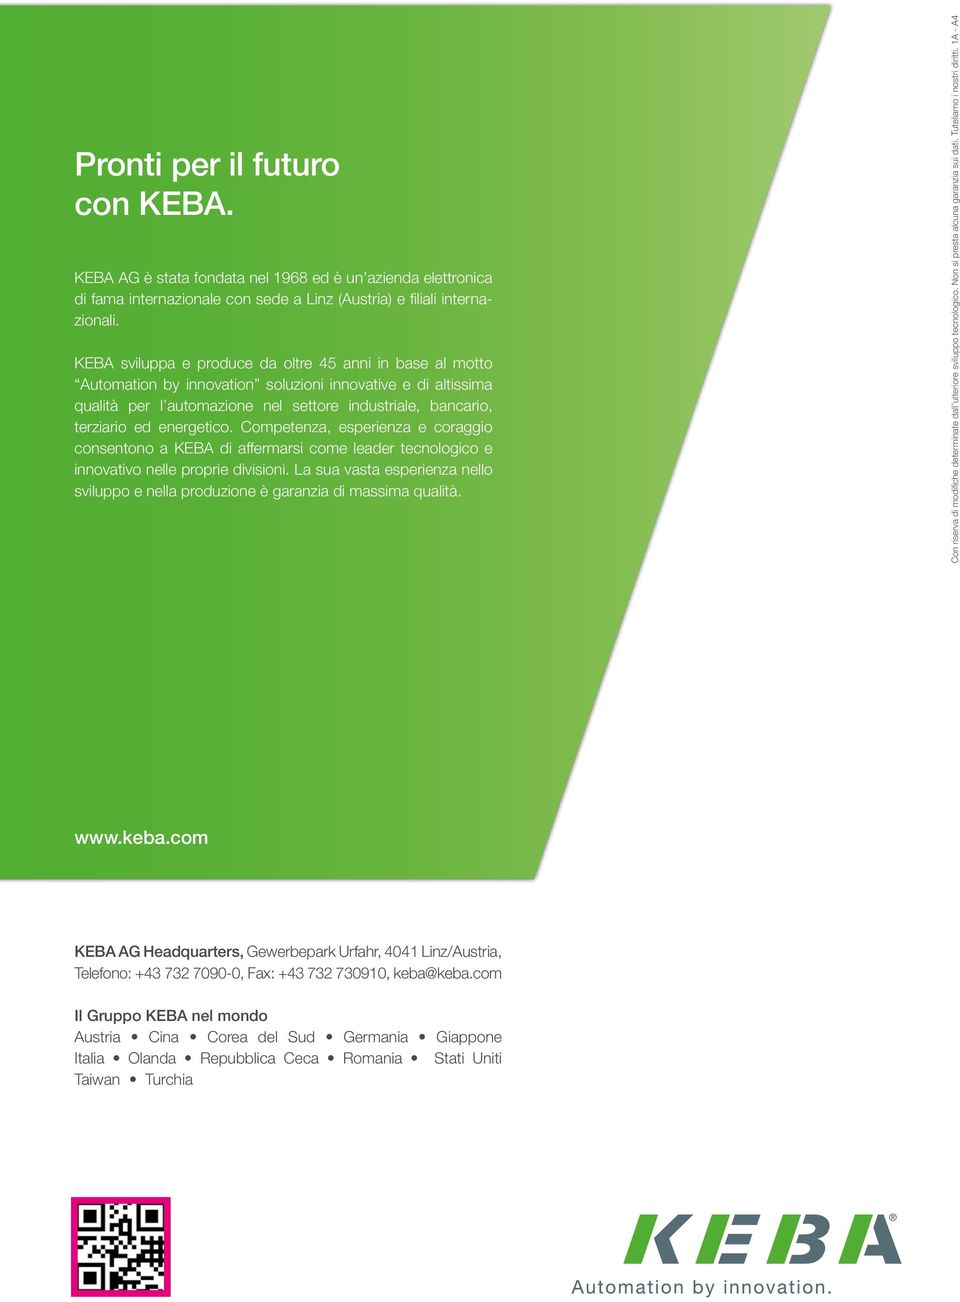 energetico. Competenza, esperienza e coraggio consentono a KEBA di affermarsi come leader tecnologico e innovativo nelle proprie divisioni.